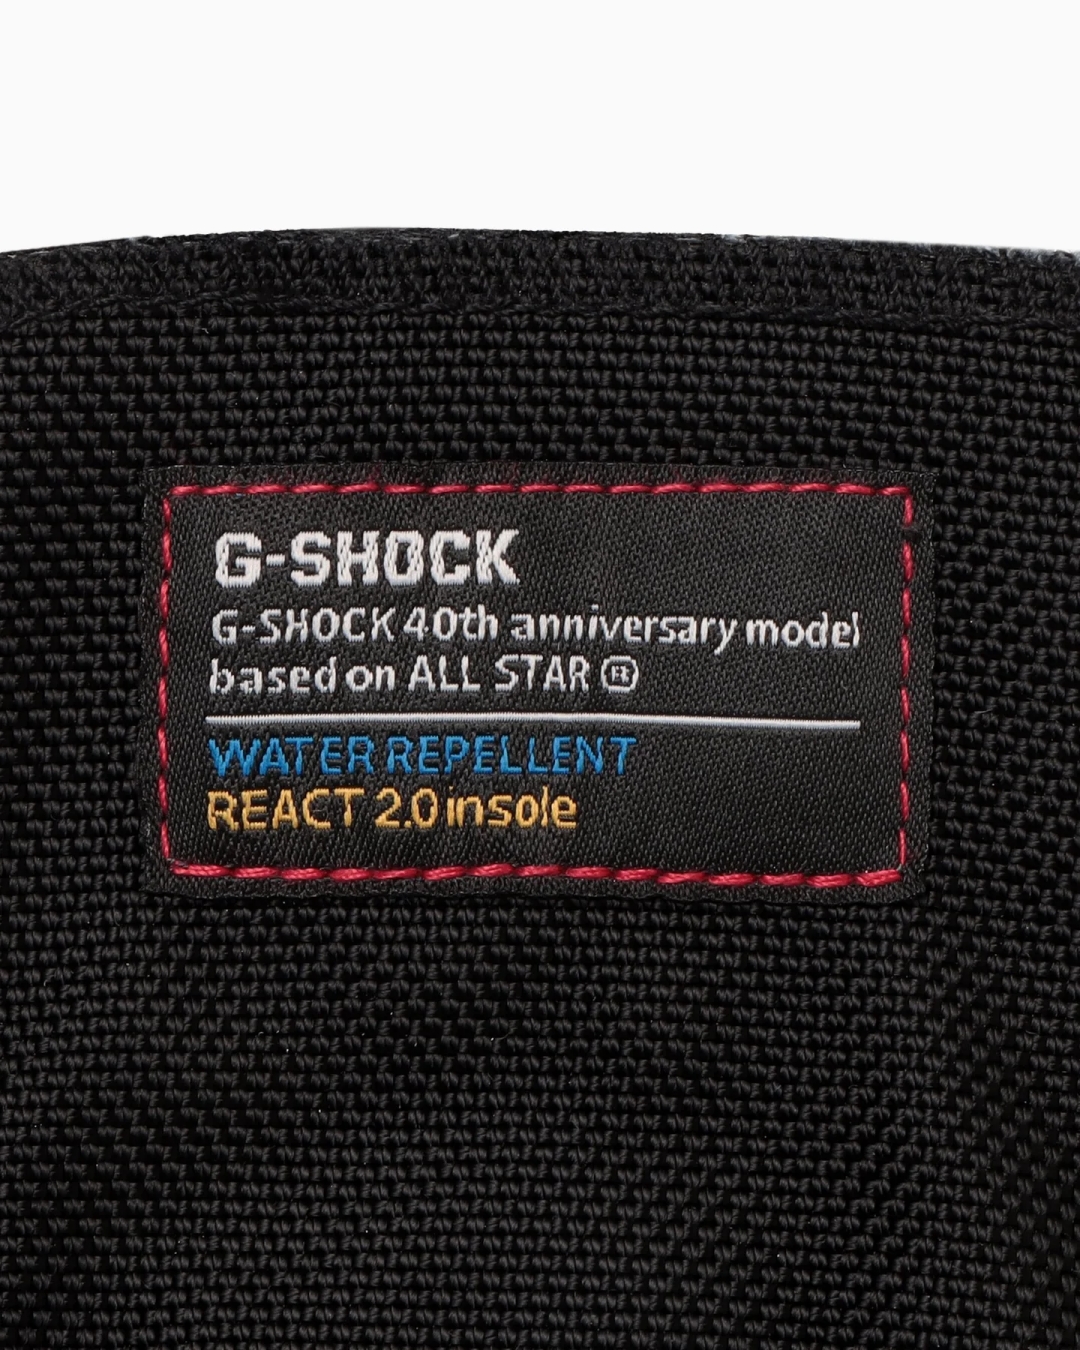 【国内 10/24 発売】G-SHOCK × CONVERSE ALL STAR (R) HI “G-SHOCK” (コンバース オールスター R Gショック ジーショック)